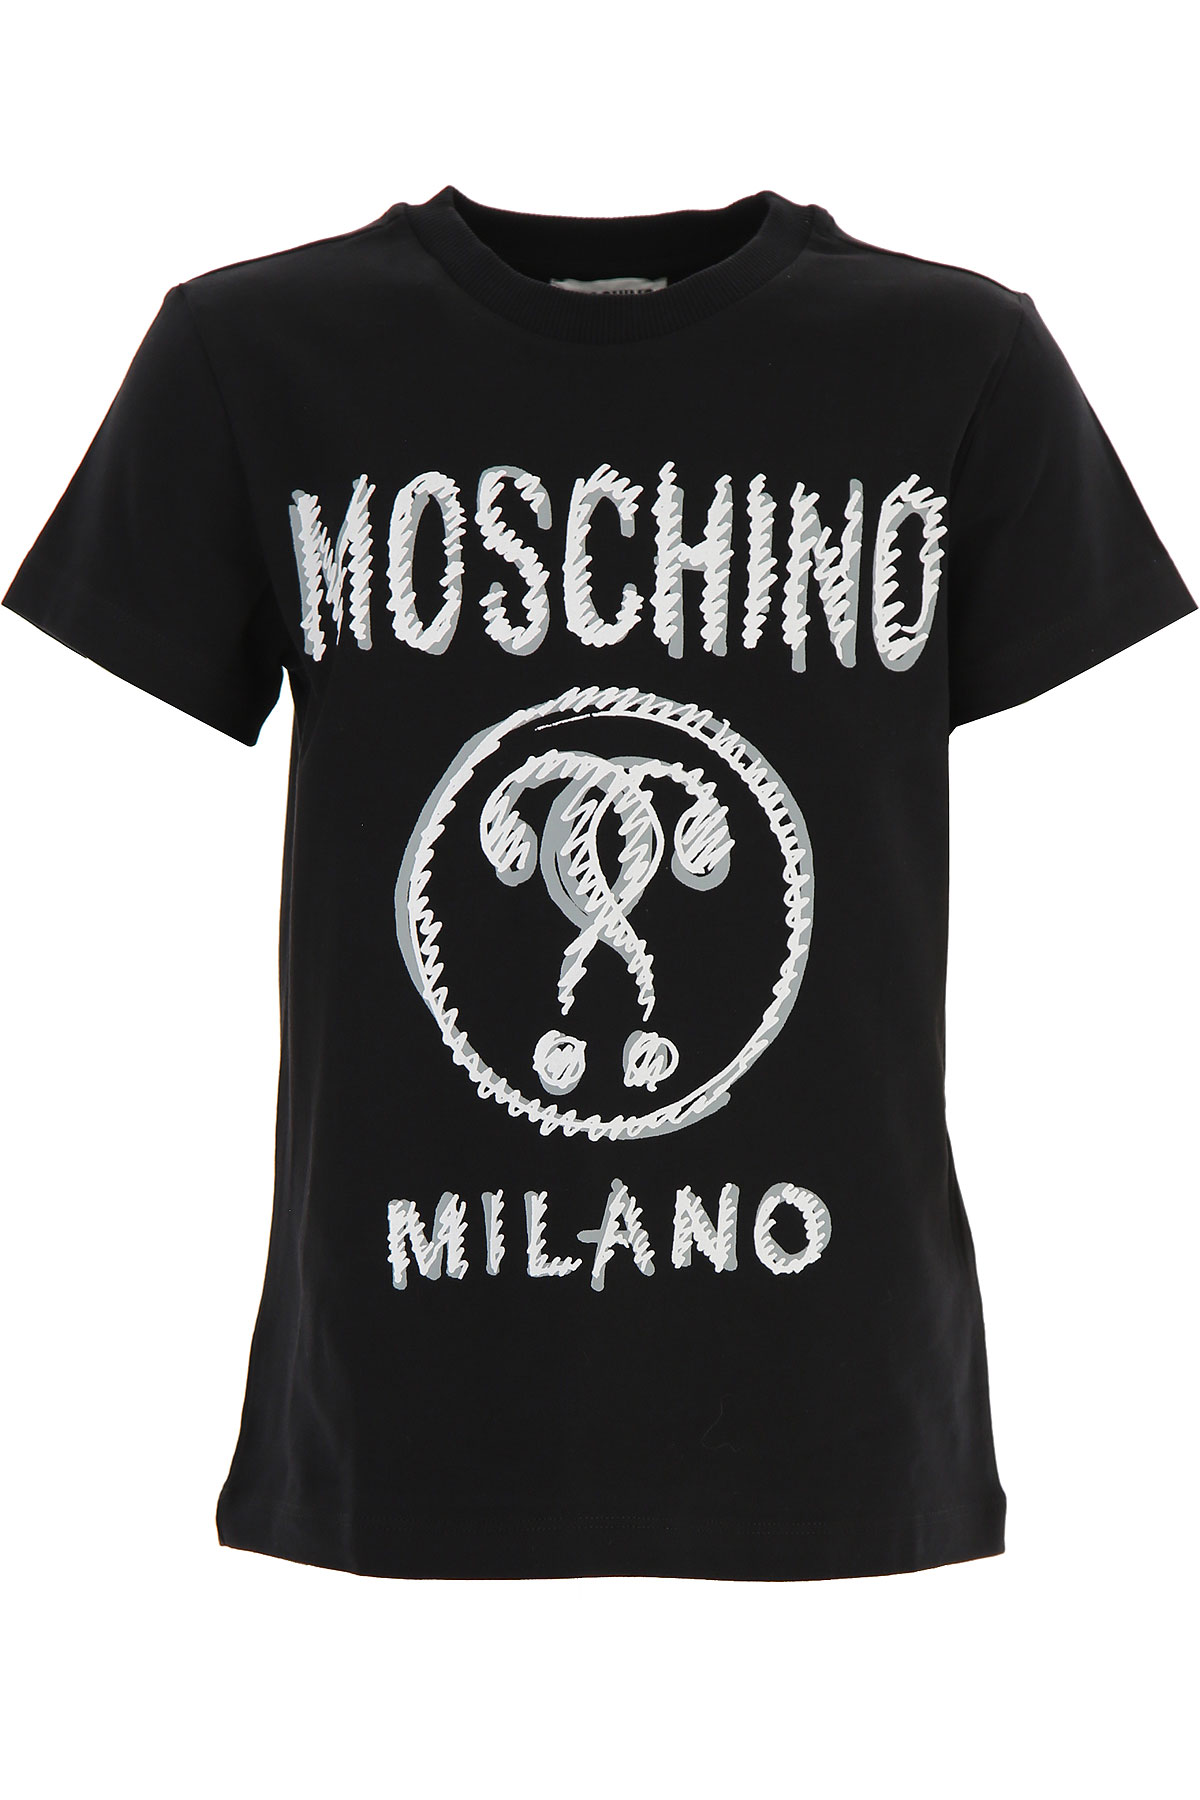 Moschino Kinder T-Shirt für Jungen Günstig im Sale, Schwarz, Terracotto-Fliesen, 2017, 10Y 12Y 14Y 4Y 6Y 8Y